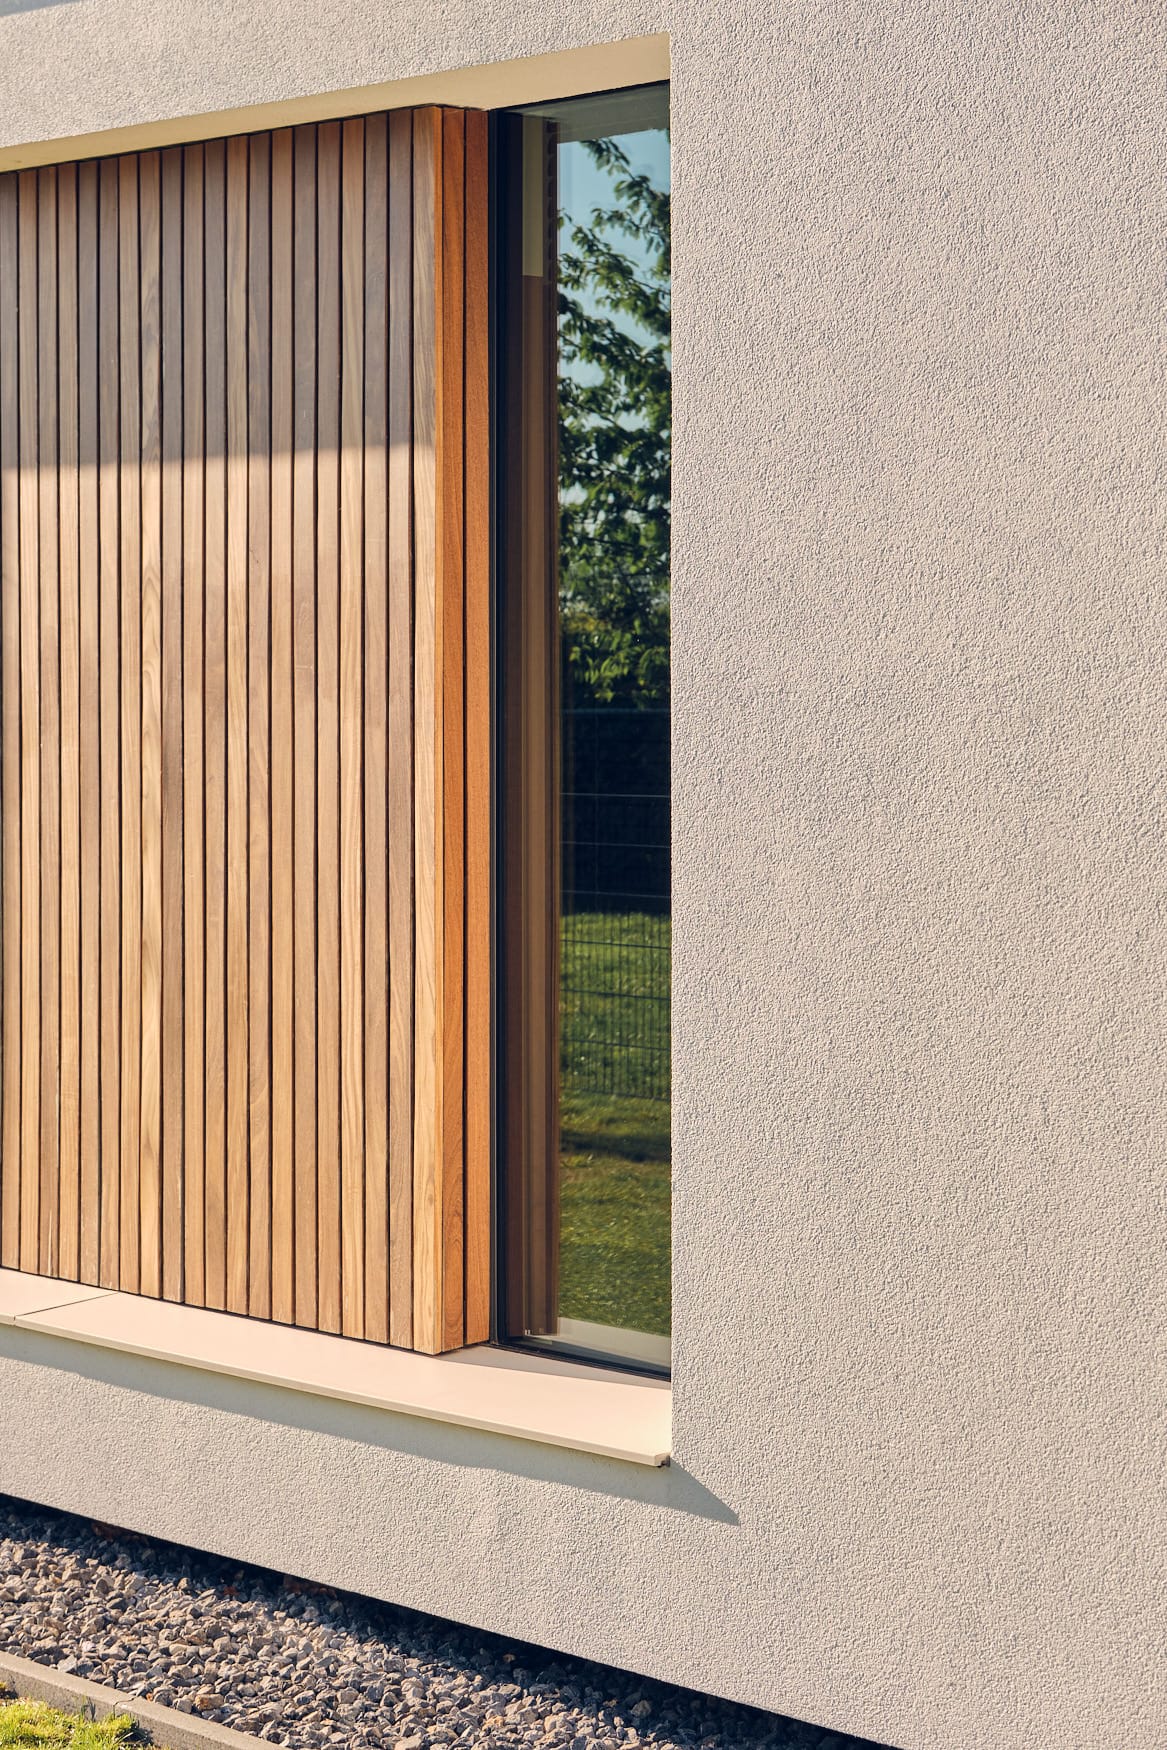 van-Os-Architecten-nieuwbouw-woning-bungalow-Prinsenbeek-detail-zijgevel-met-raam-naast-hout-in-stucwerk